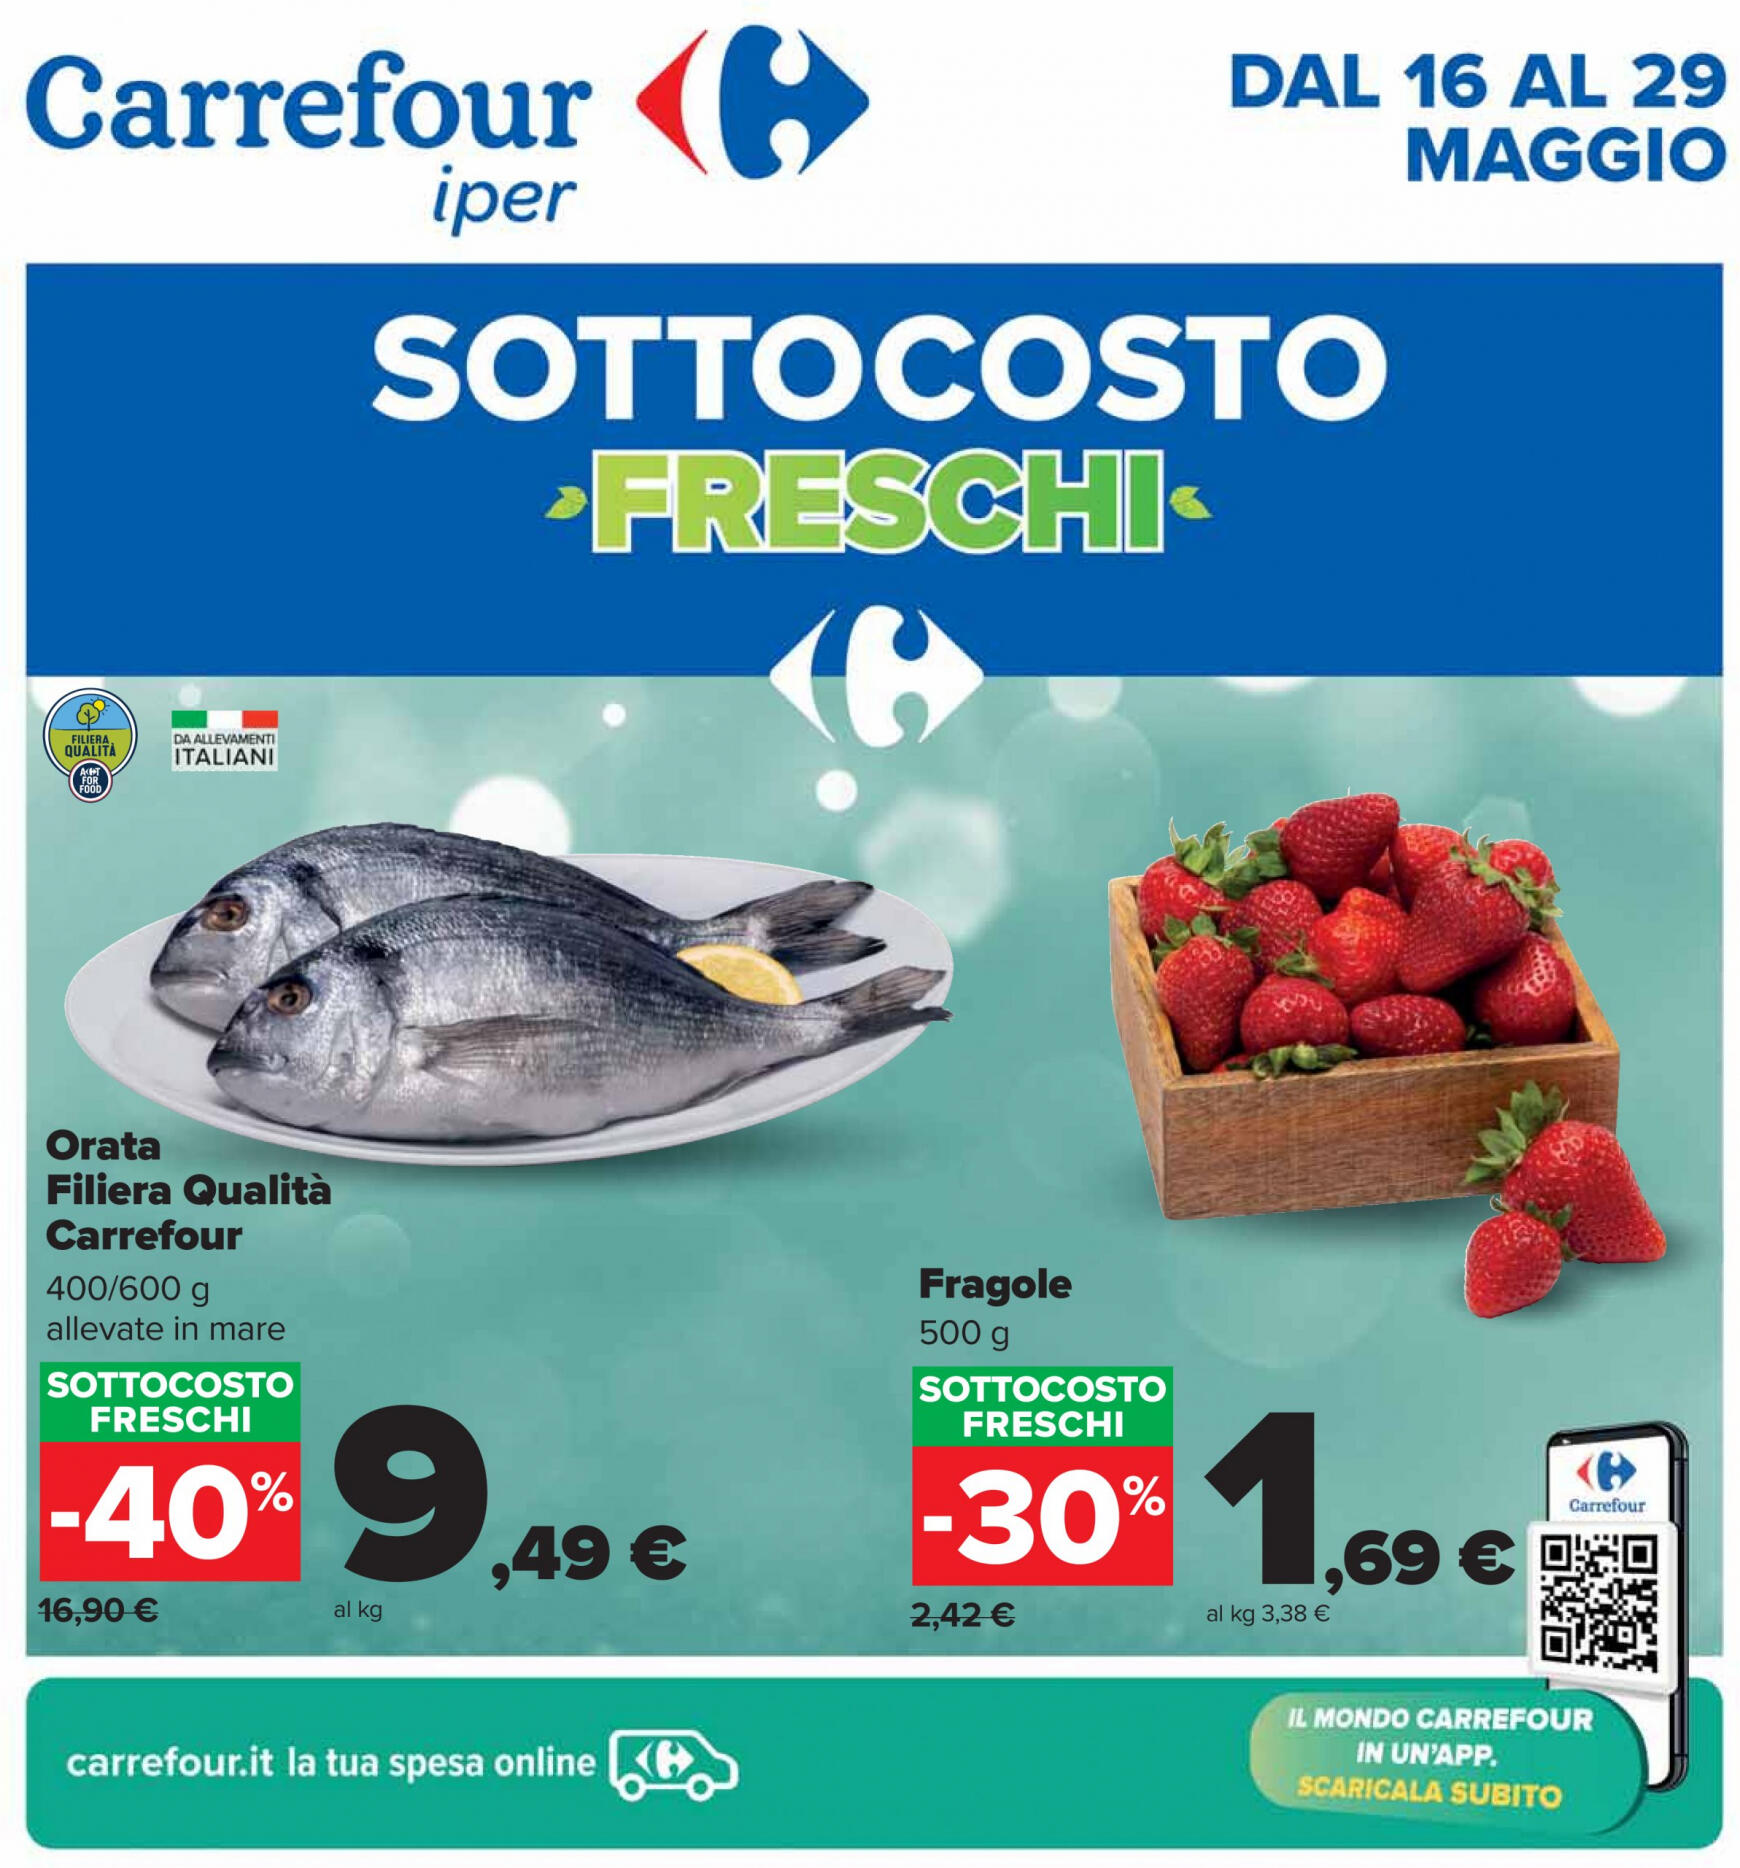 carrefour - Nuovo volantino Carrefour - Sottocosto Freschi 16.05. - 29.05.